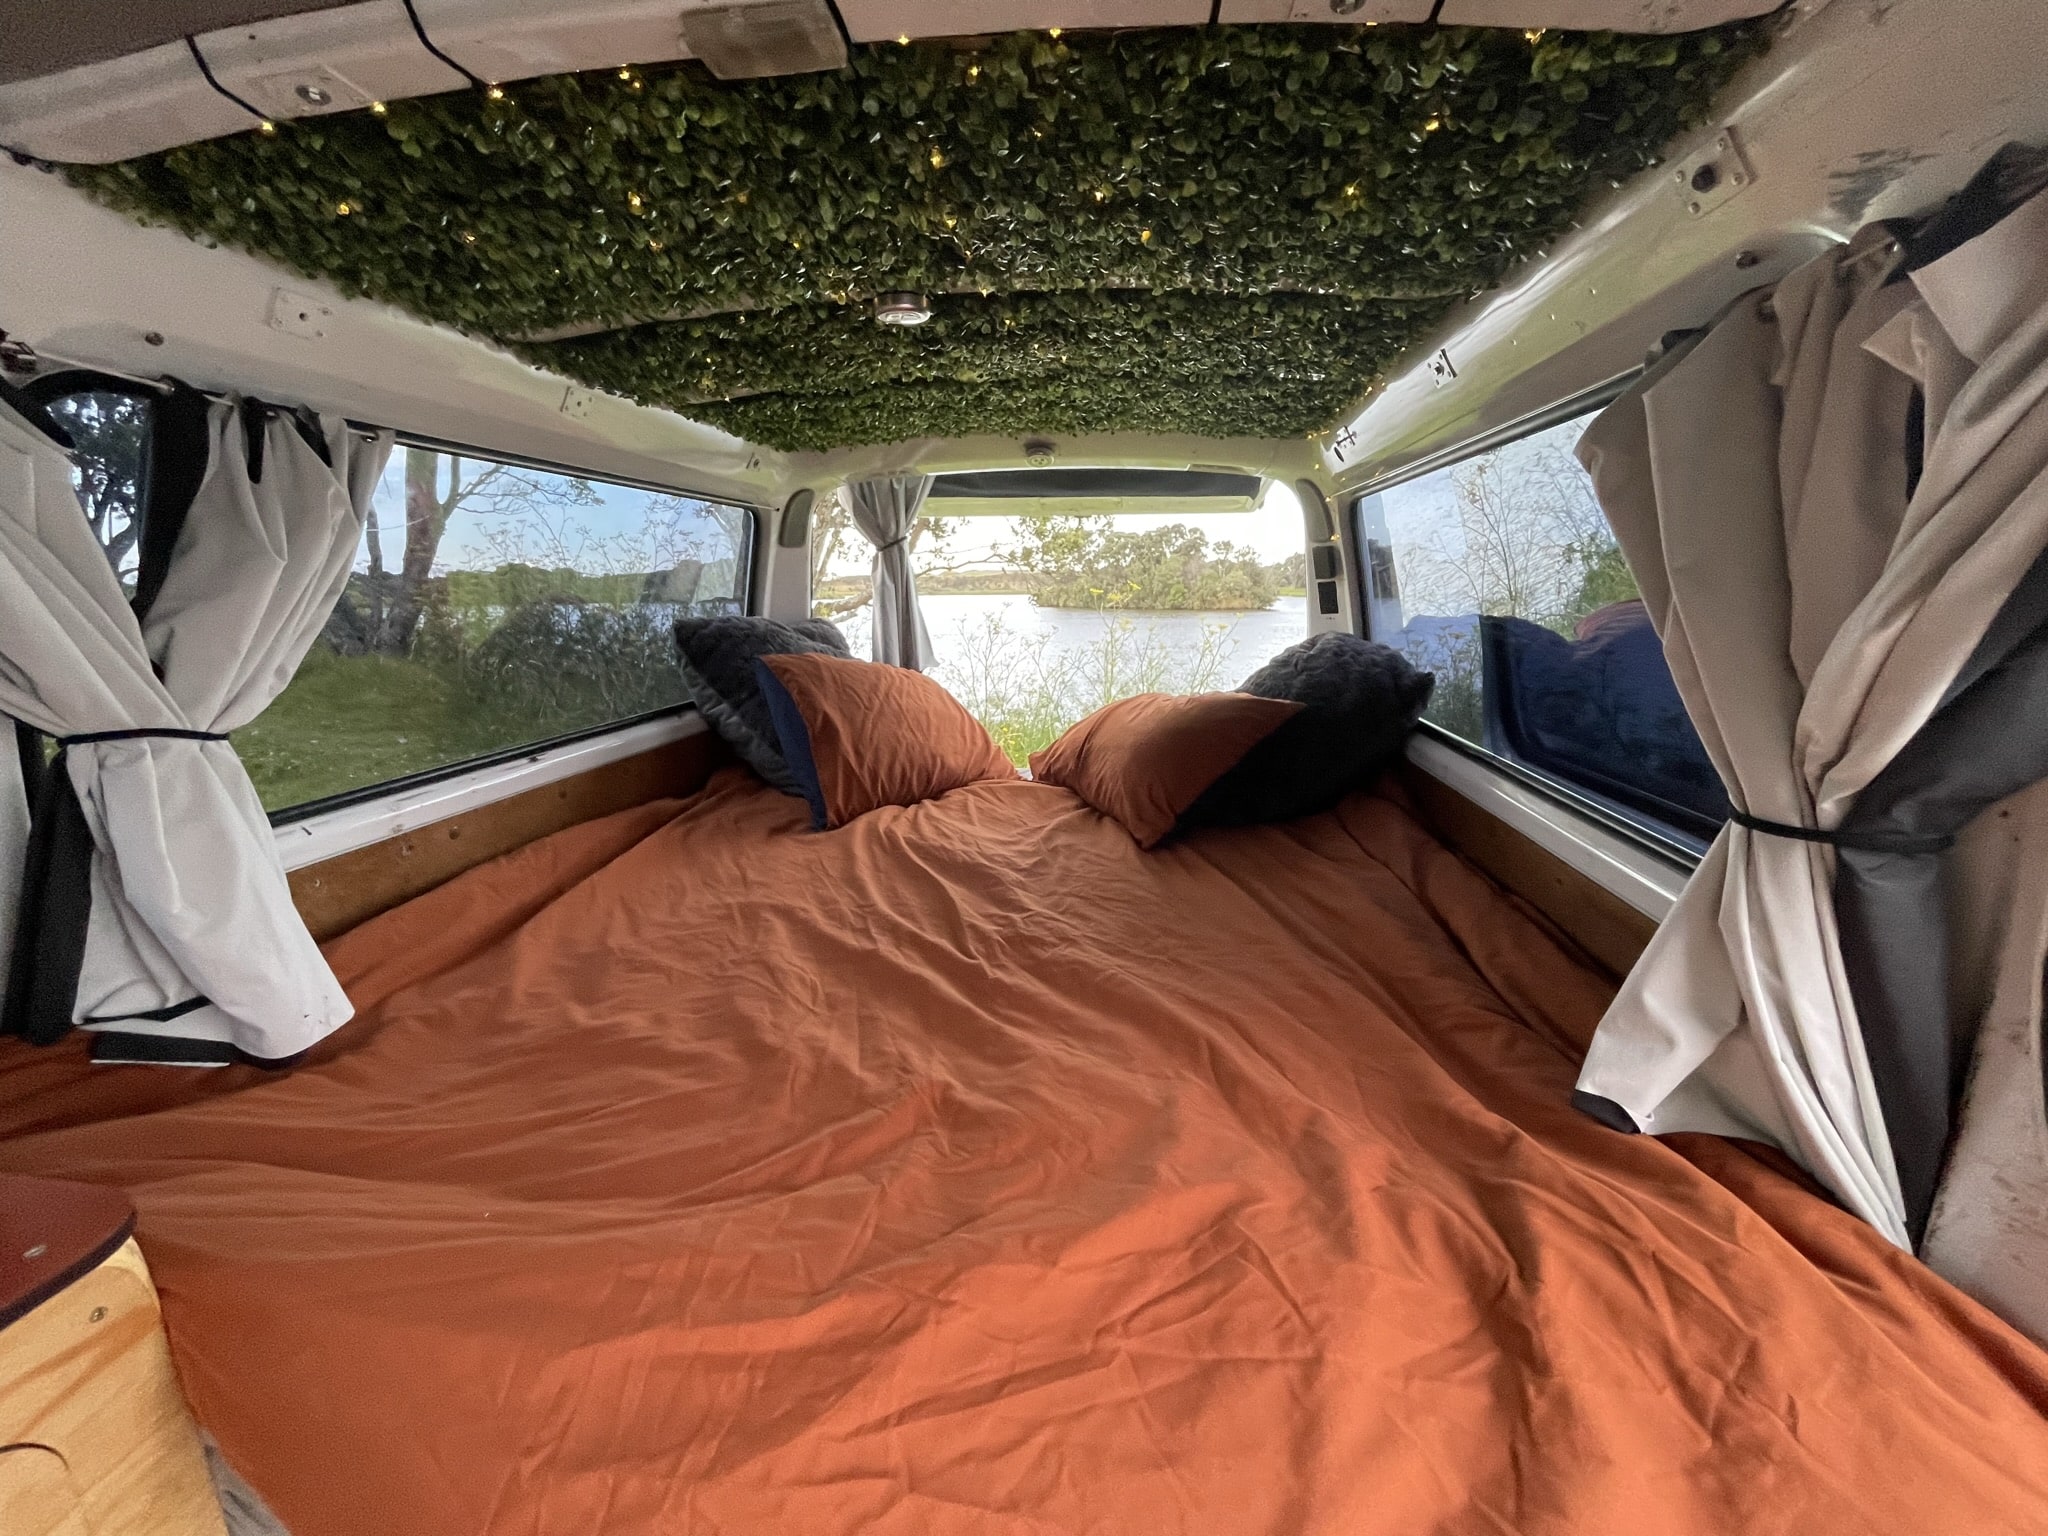 Madelonina postel během všech těchto nocí na volných kempovacích místech | Zdarma kempování na Novém Zélandu